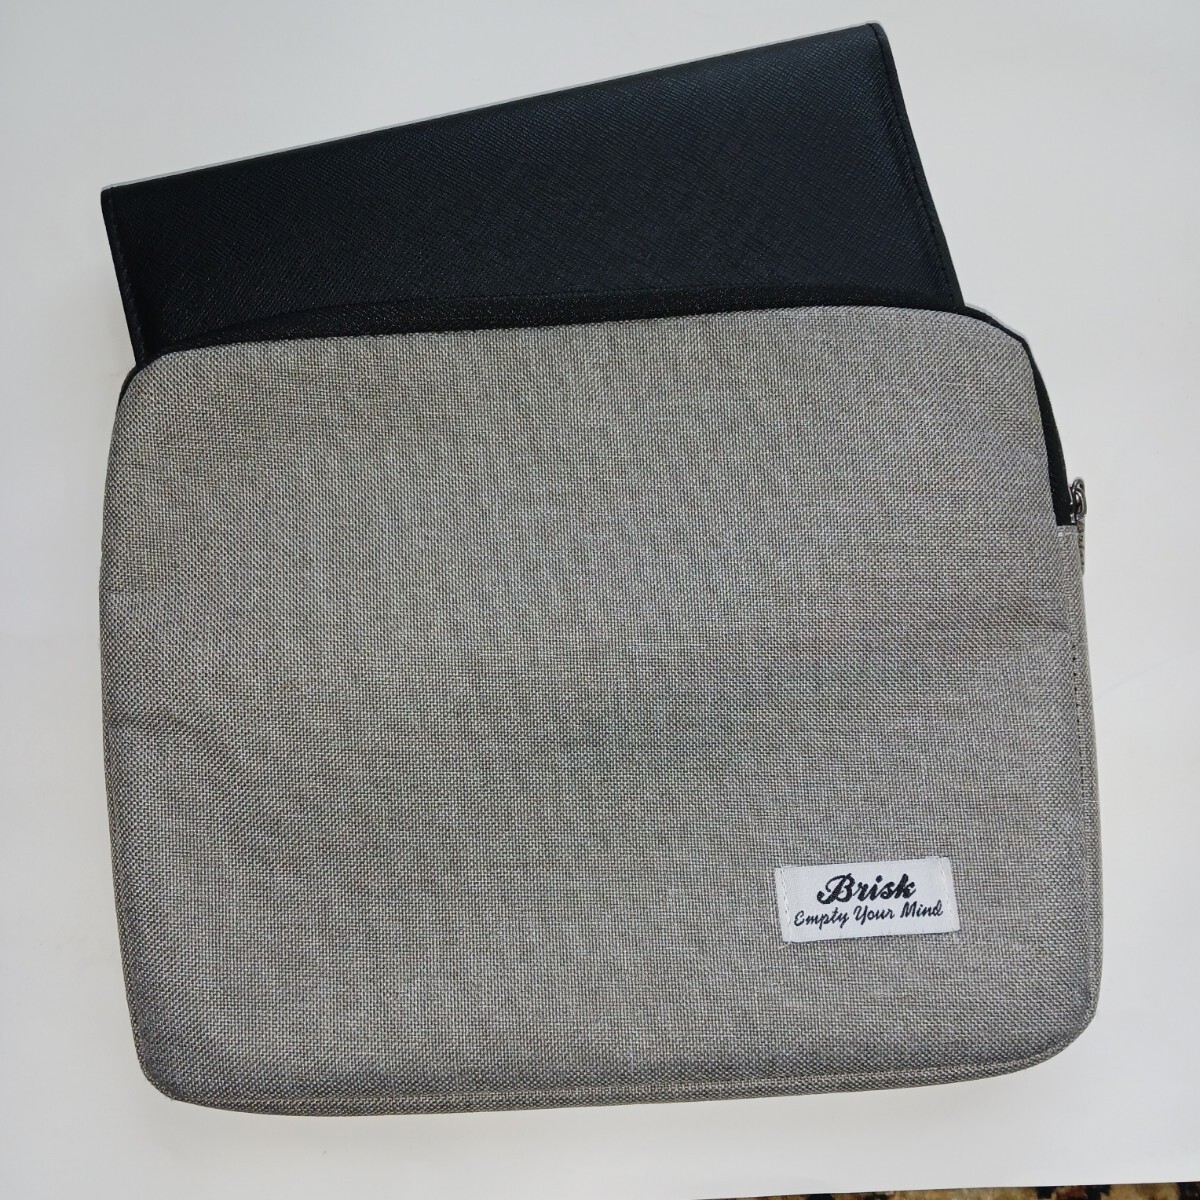  pouch case tablet case Brisk